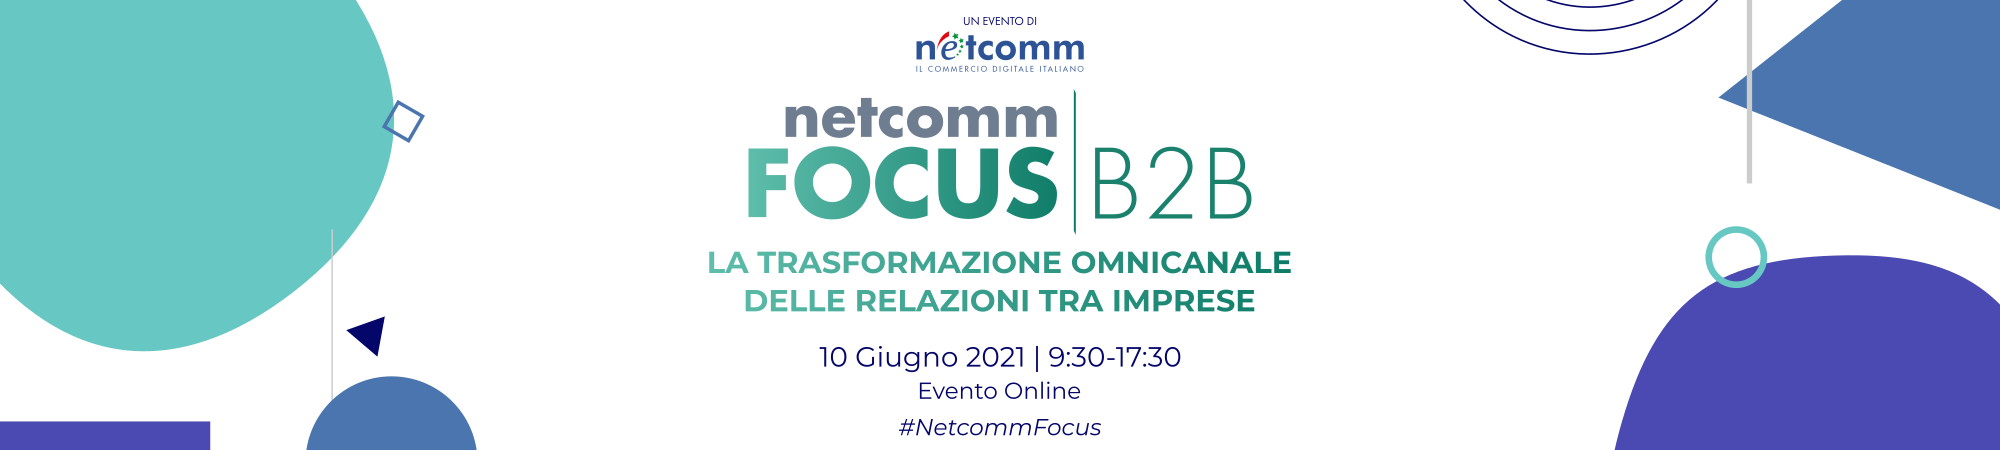 Netcomm FOCUS B2B 2021